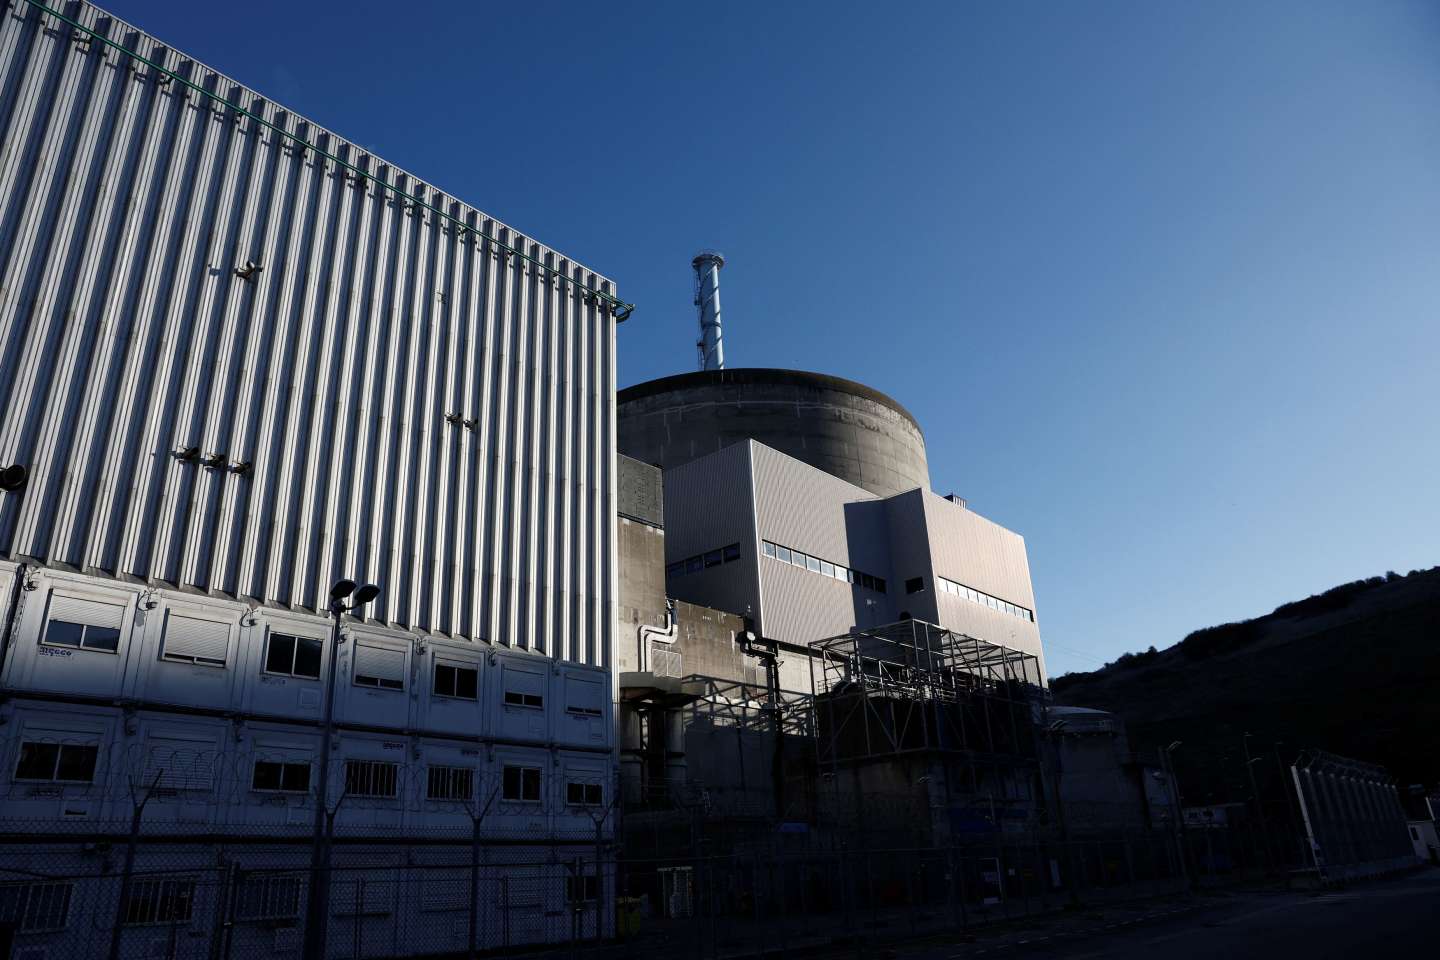 Energie nucléaire : « La sous-traitance permet aux exploitants de rendre invisible le travail humain exposé à la radioactivité et invisibilise ses conséquences sanitaires »